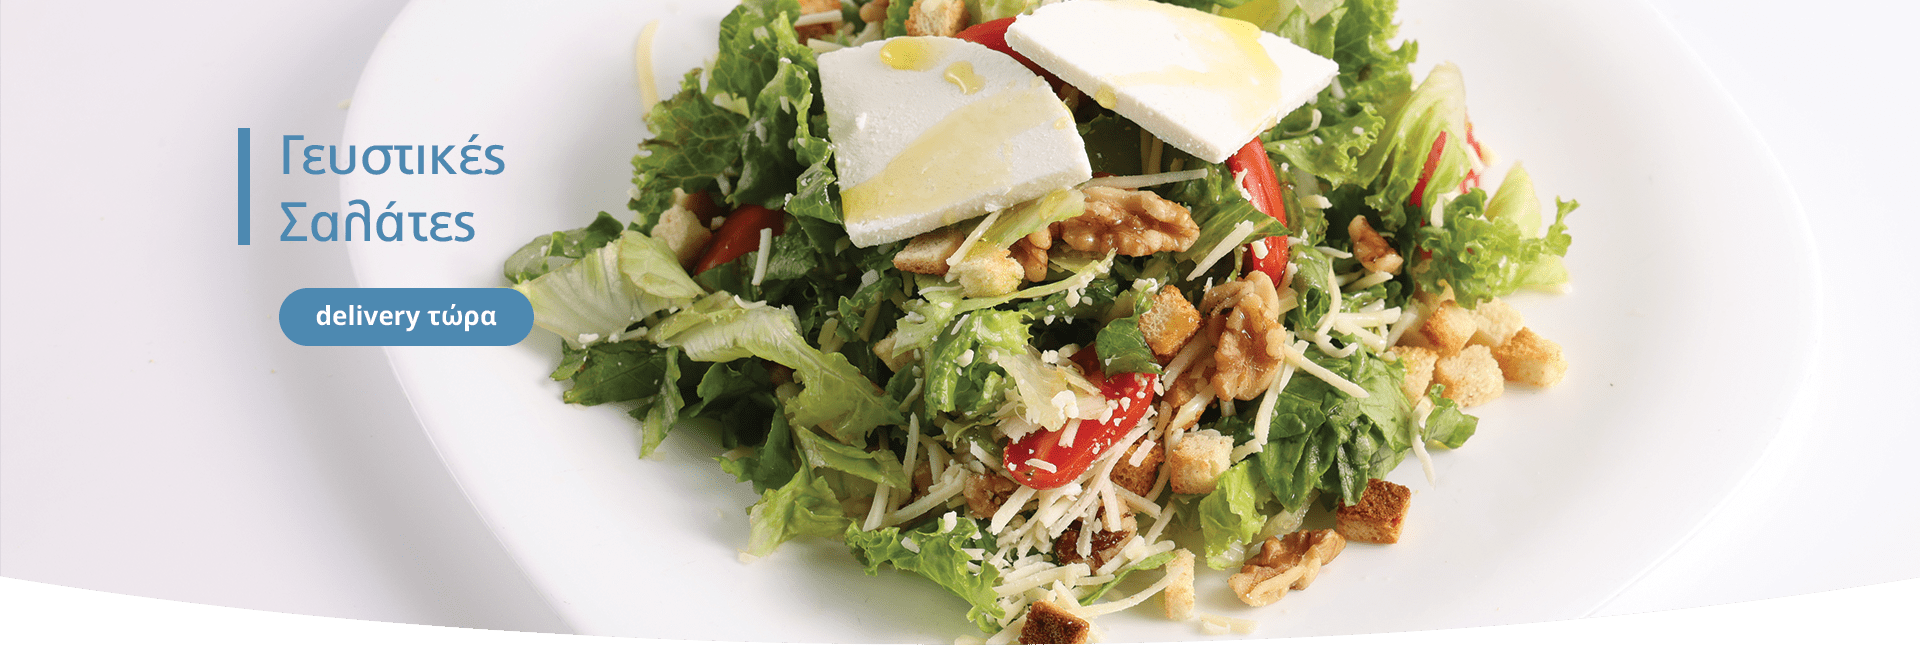 Σαλάτες | Creperie Online